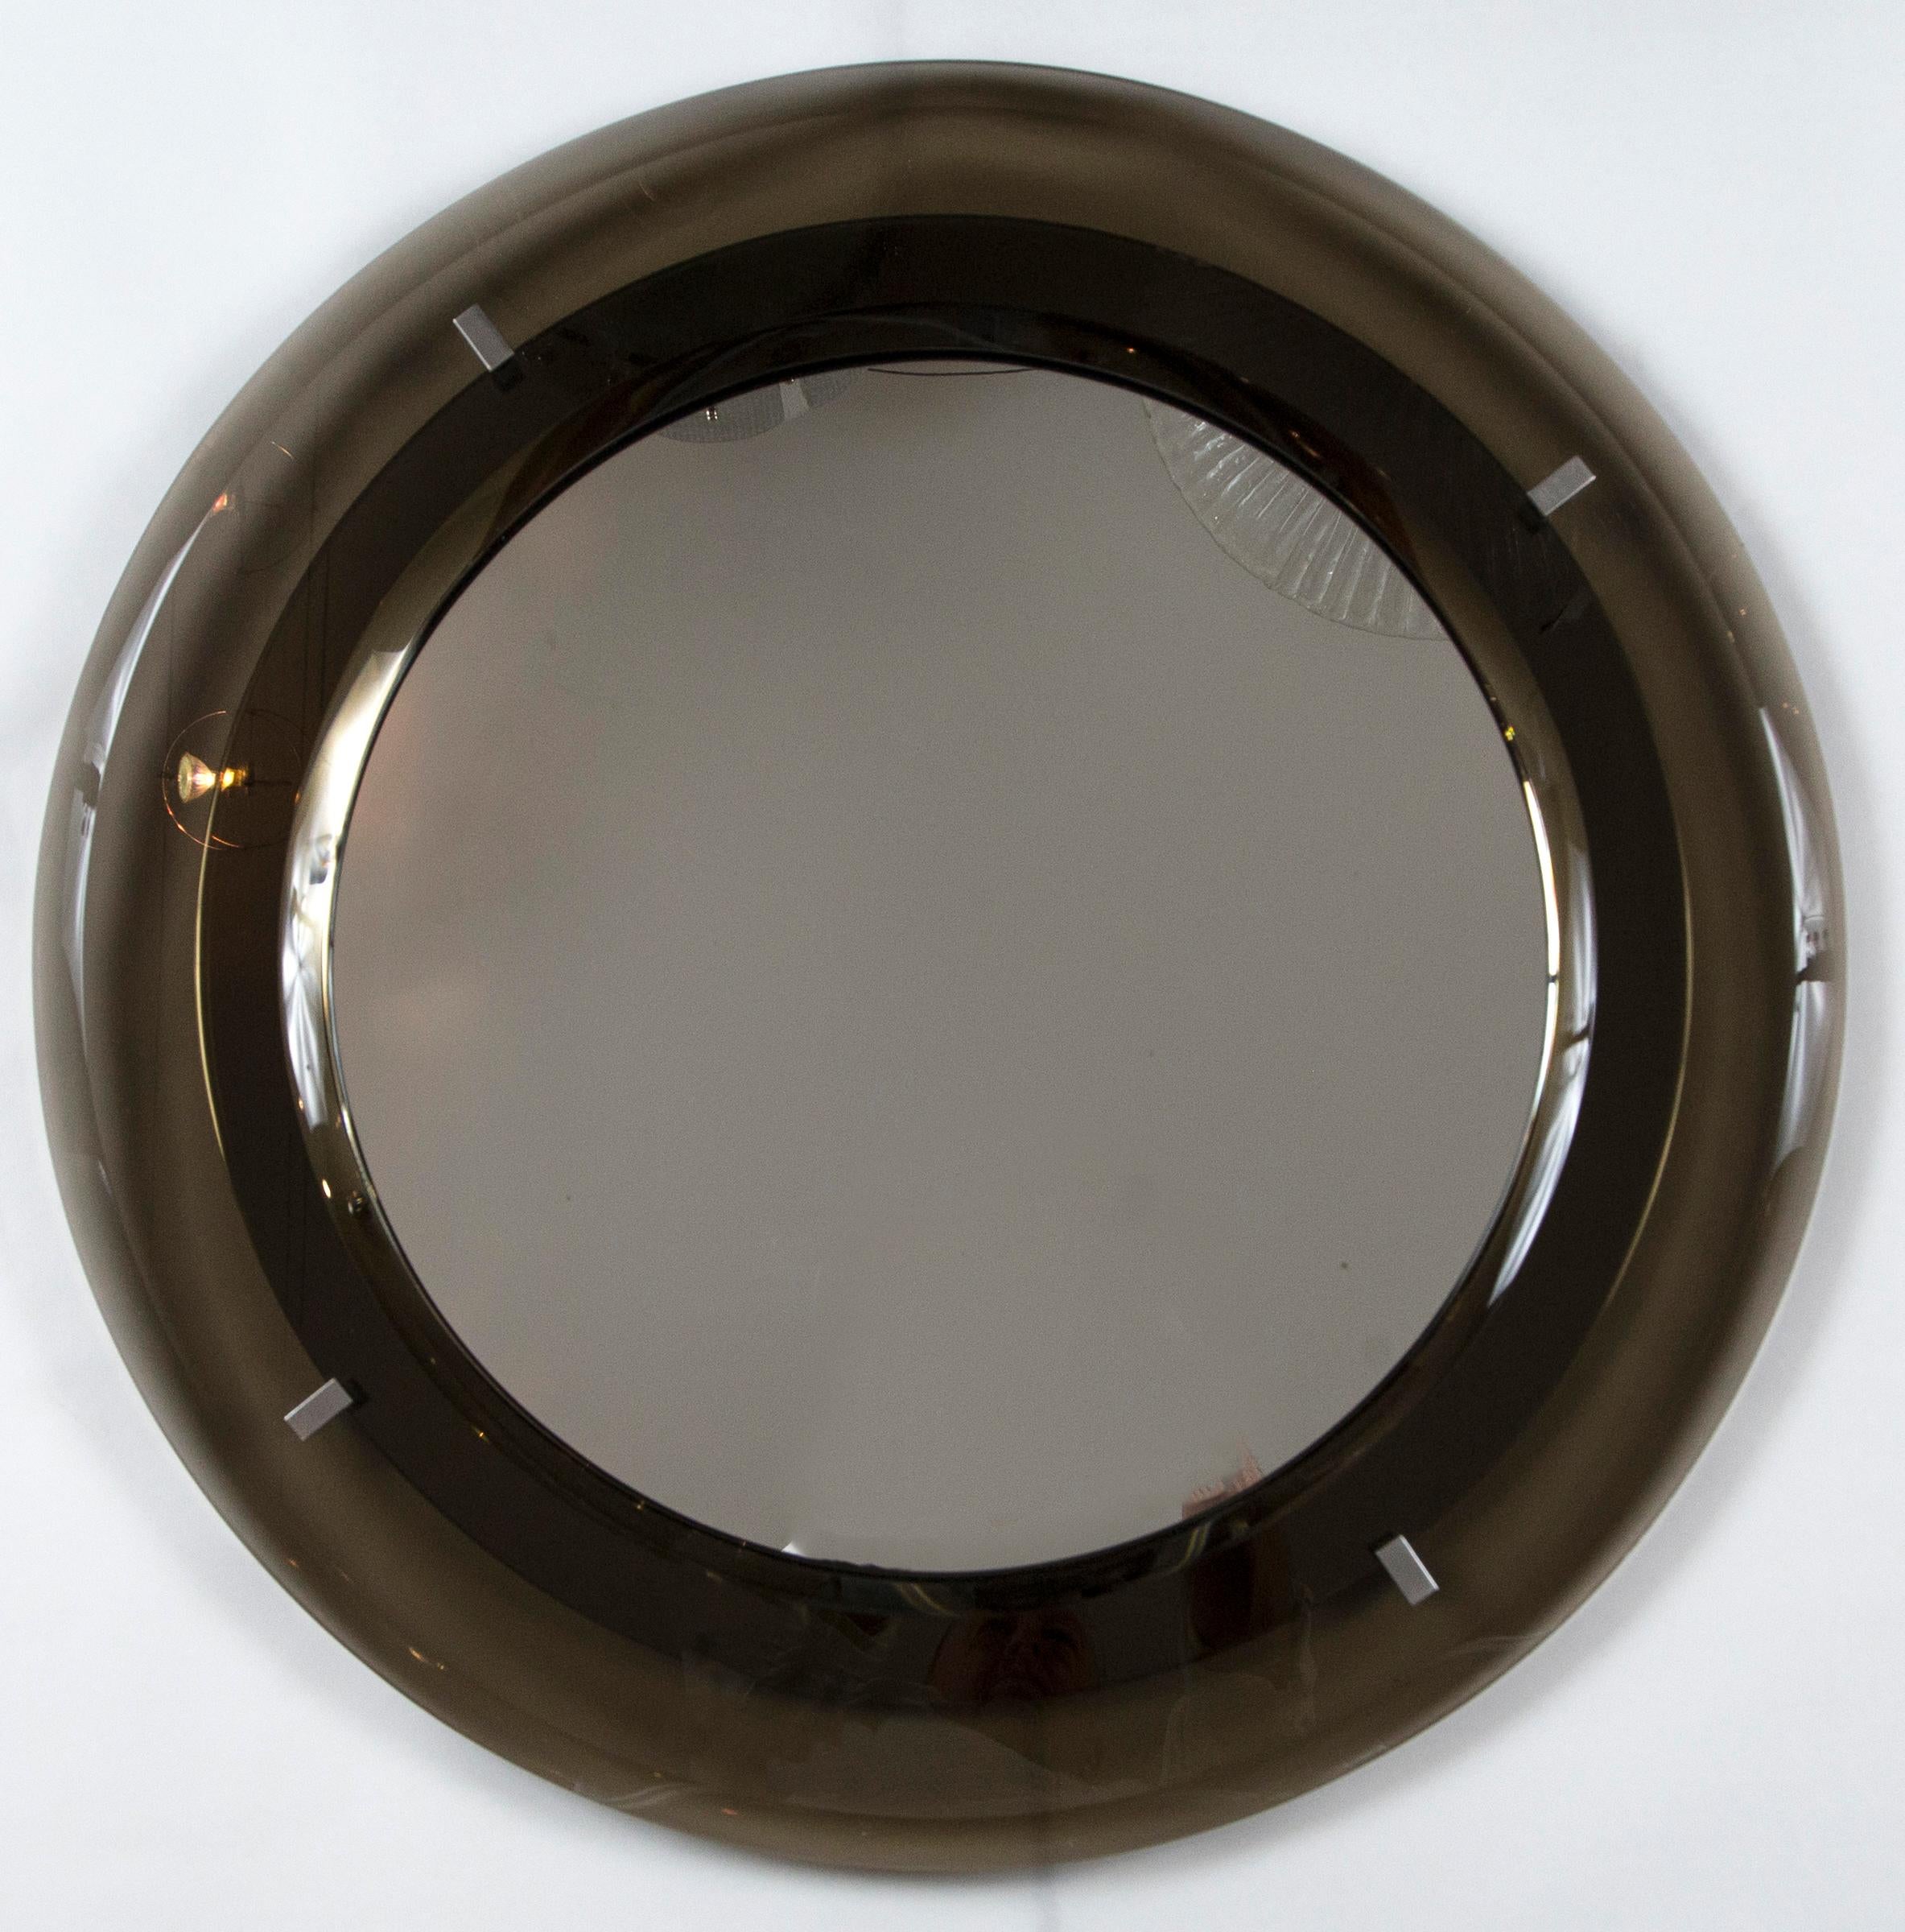 Merveilleux miroir circulaire flottant en cristal biseauté de couleur taupe fumé, avec verre neuf de Cristal Arte
Lieu d'origine :
Italie
Date de fabrication :
vers 1960
Condition :
Excellent
Dimensions :
Diamètre
Période : 20e